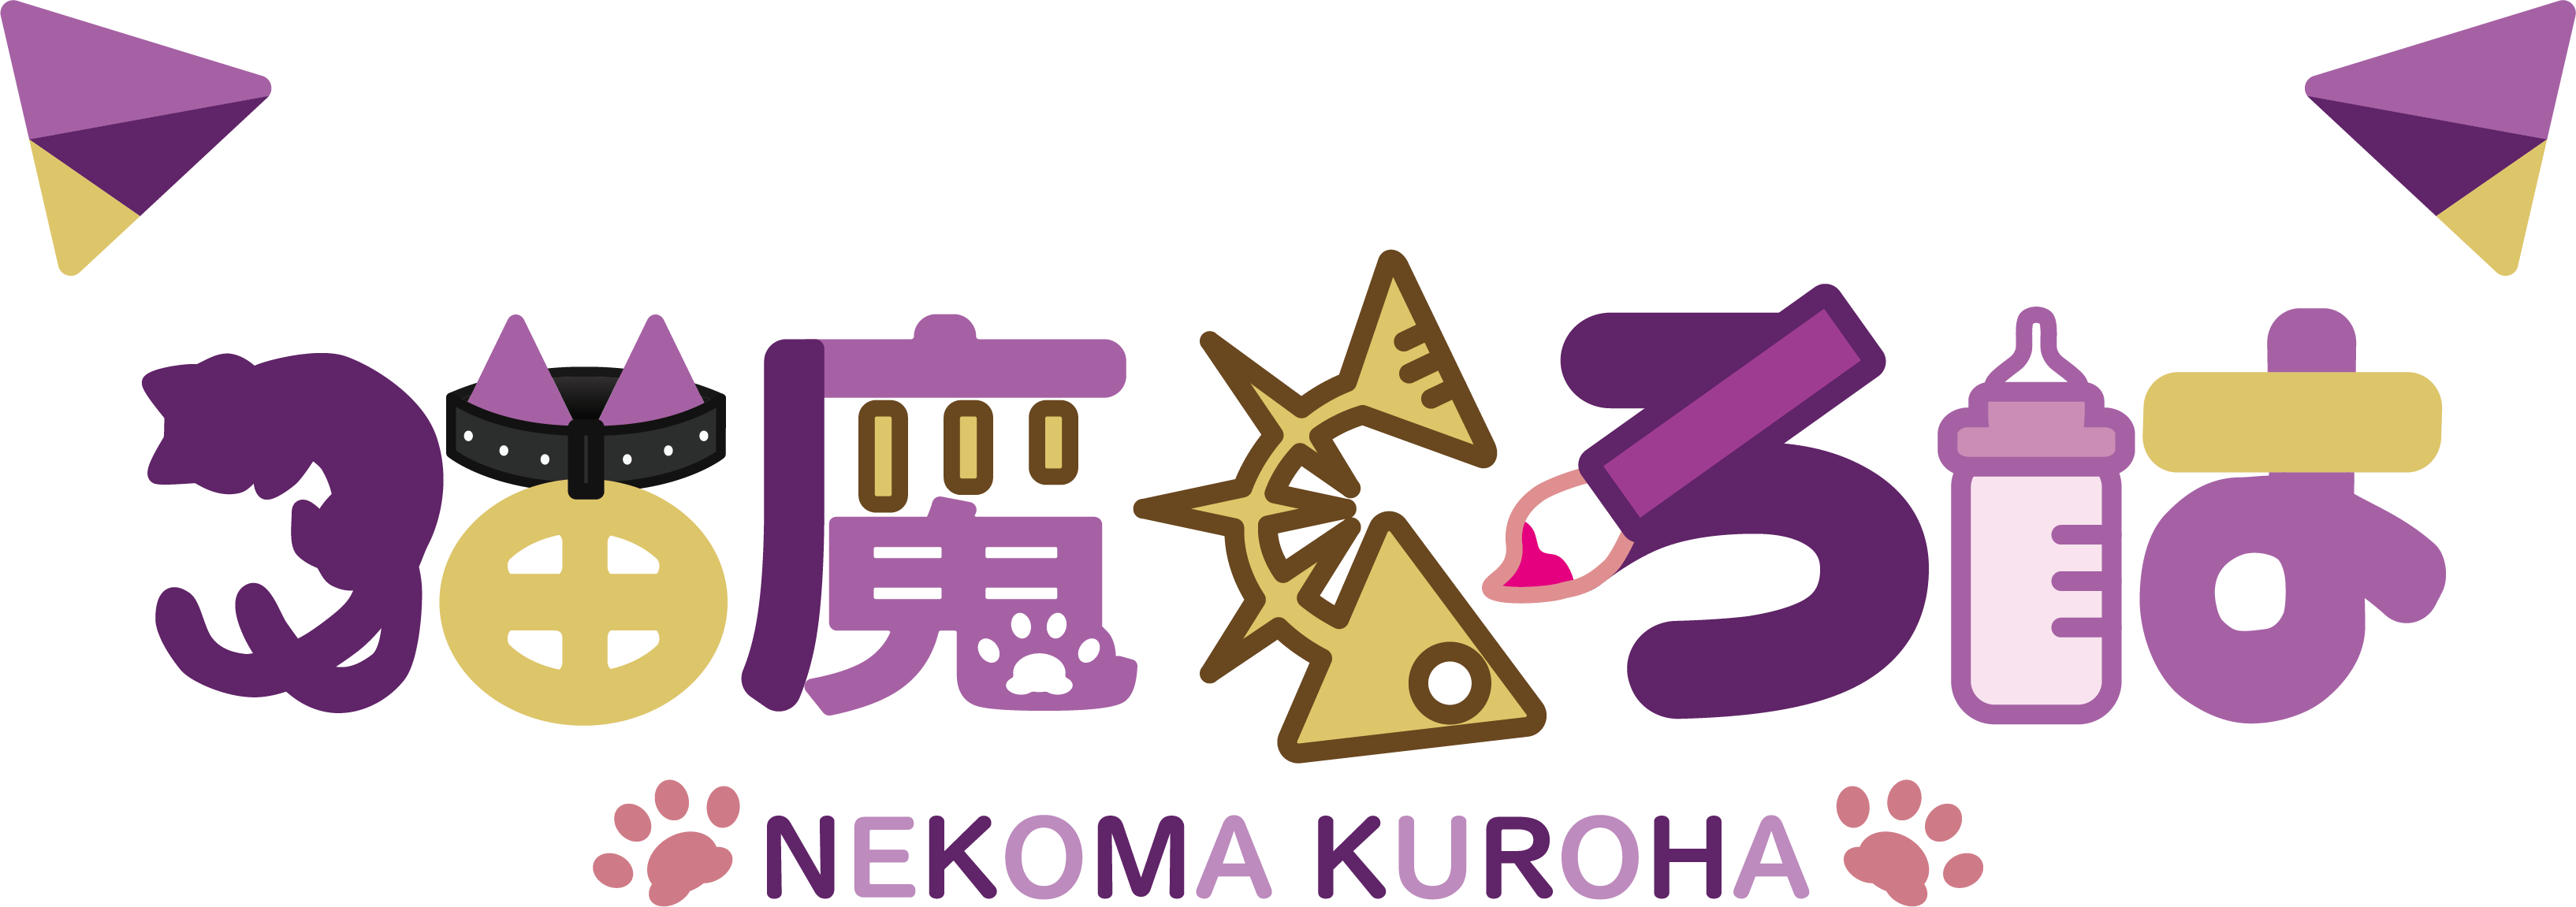 Nekoma Kuroha